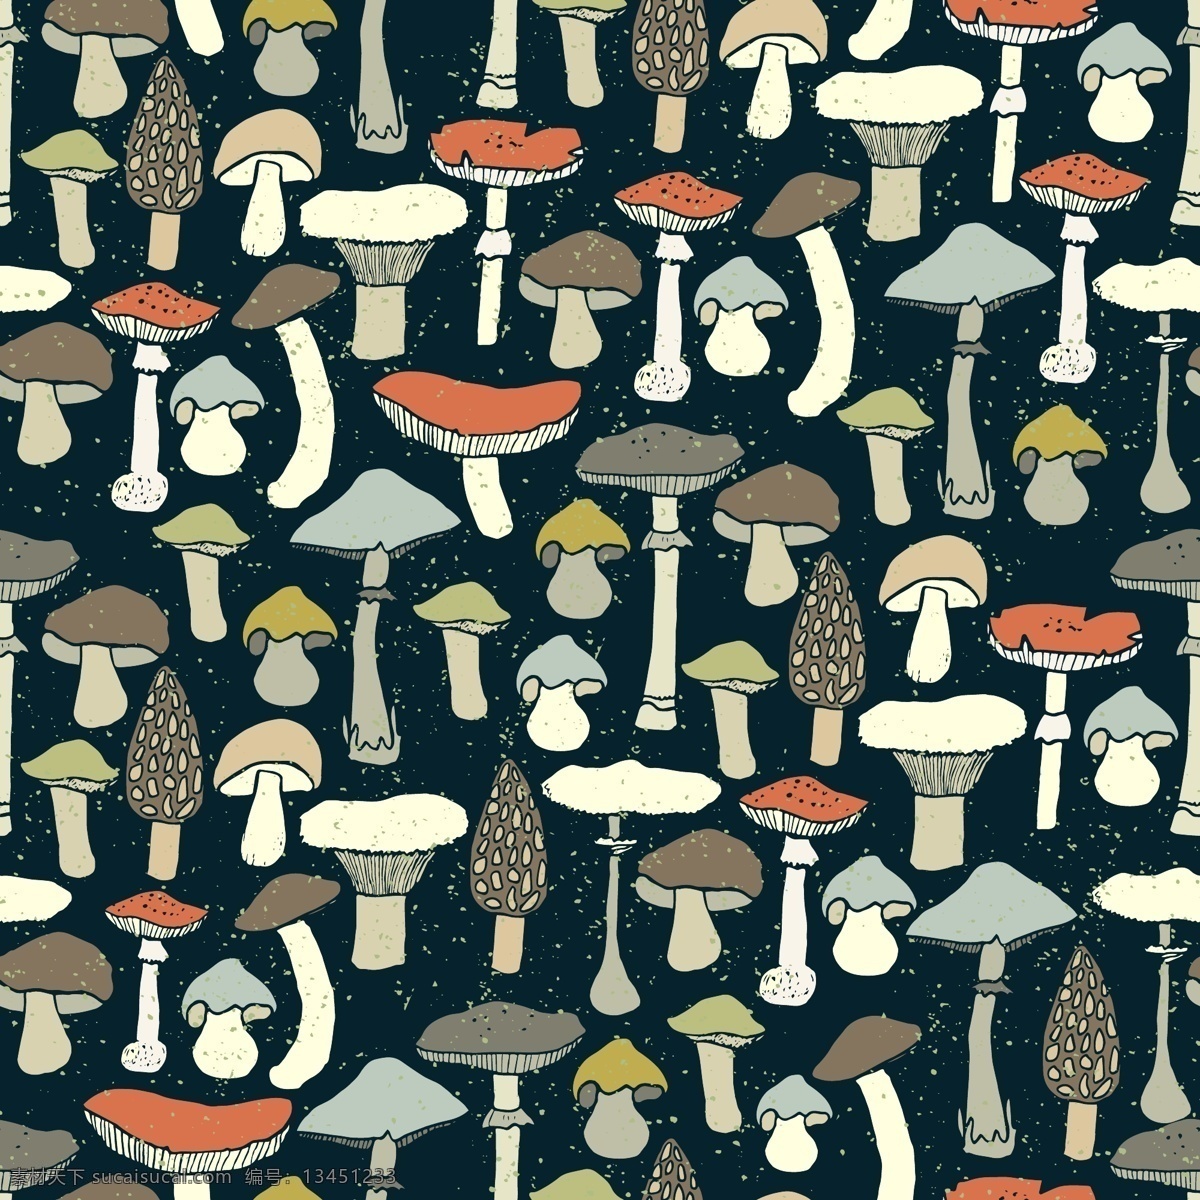 无 拼接 手绘 蘑菇 矢量 无拼接 可爱 风格 背景 平菇 野蘑菇 毒蘑菇 图案 卡通 色彩 装饰 装修 涂鸦 织物 枕头 靠垫 动漫动画 风景漫画